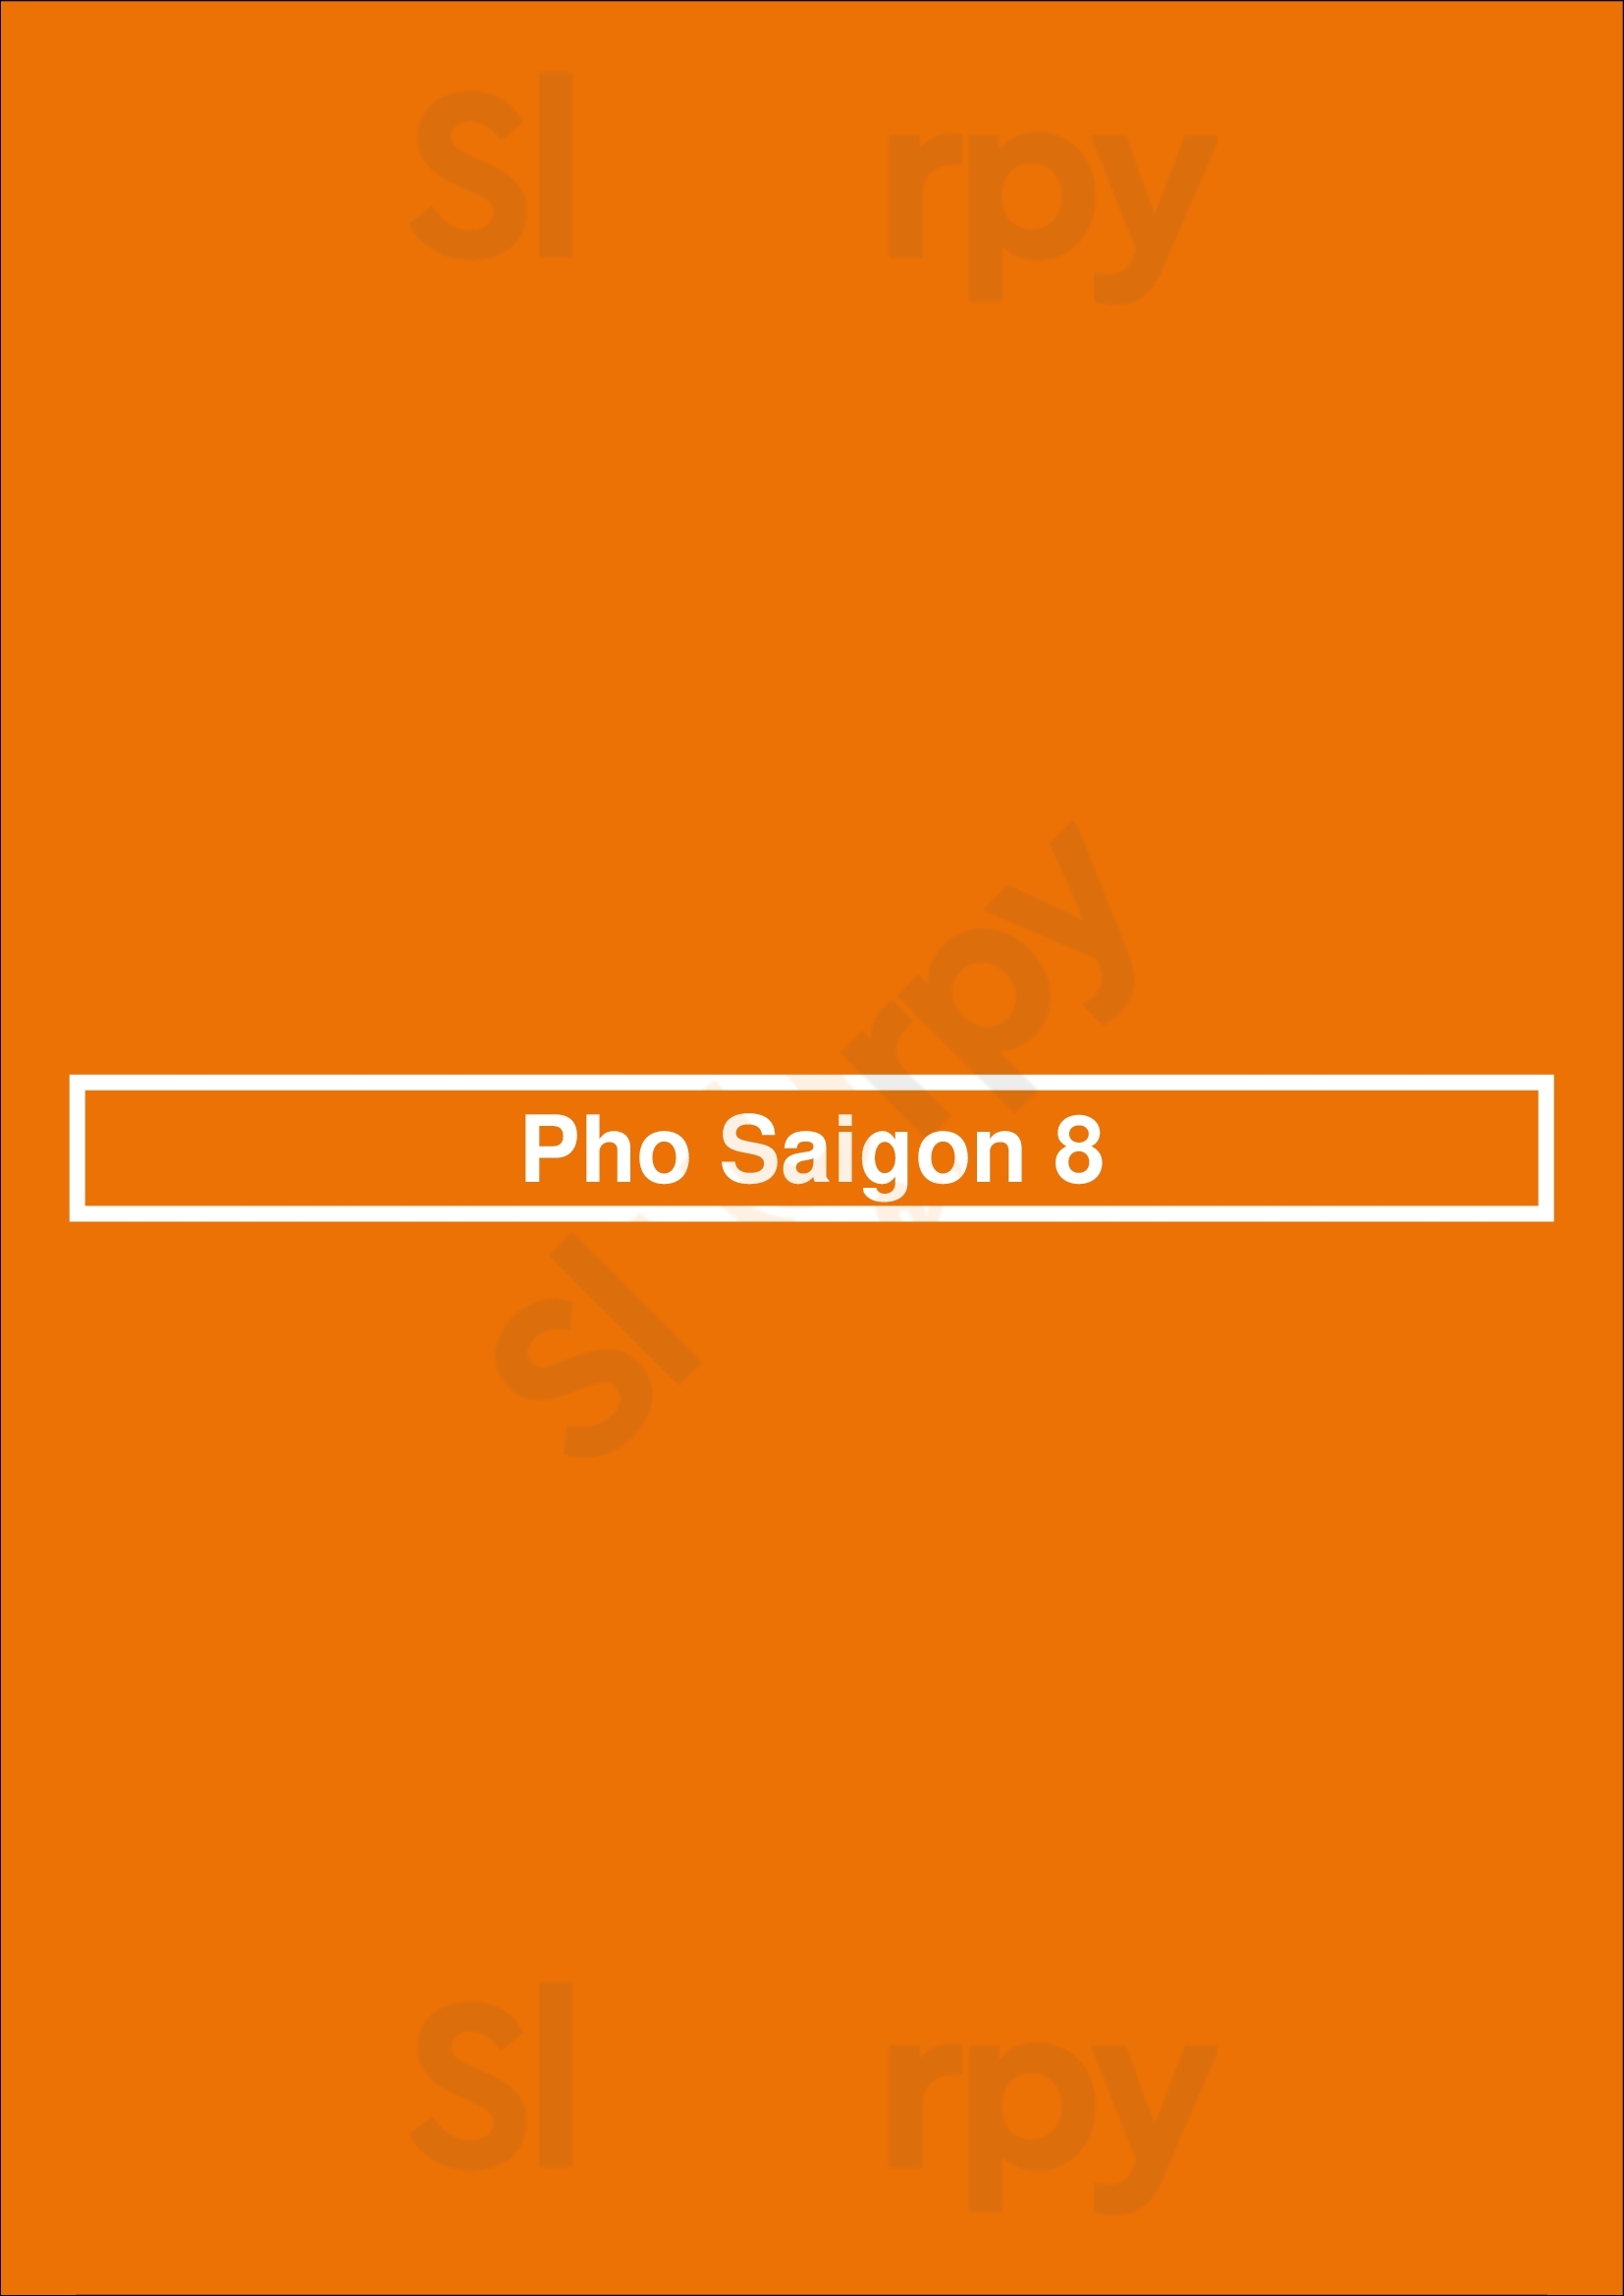 Pho Saigon 8 Las Vegas Menu - 1